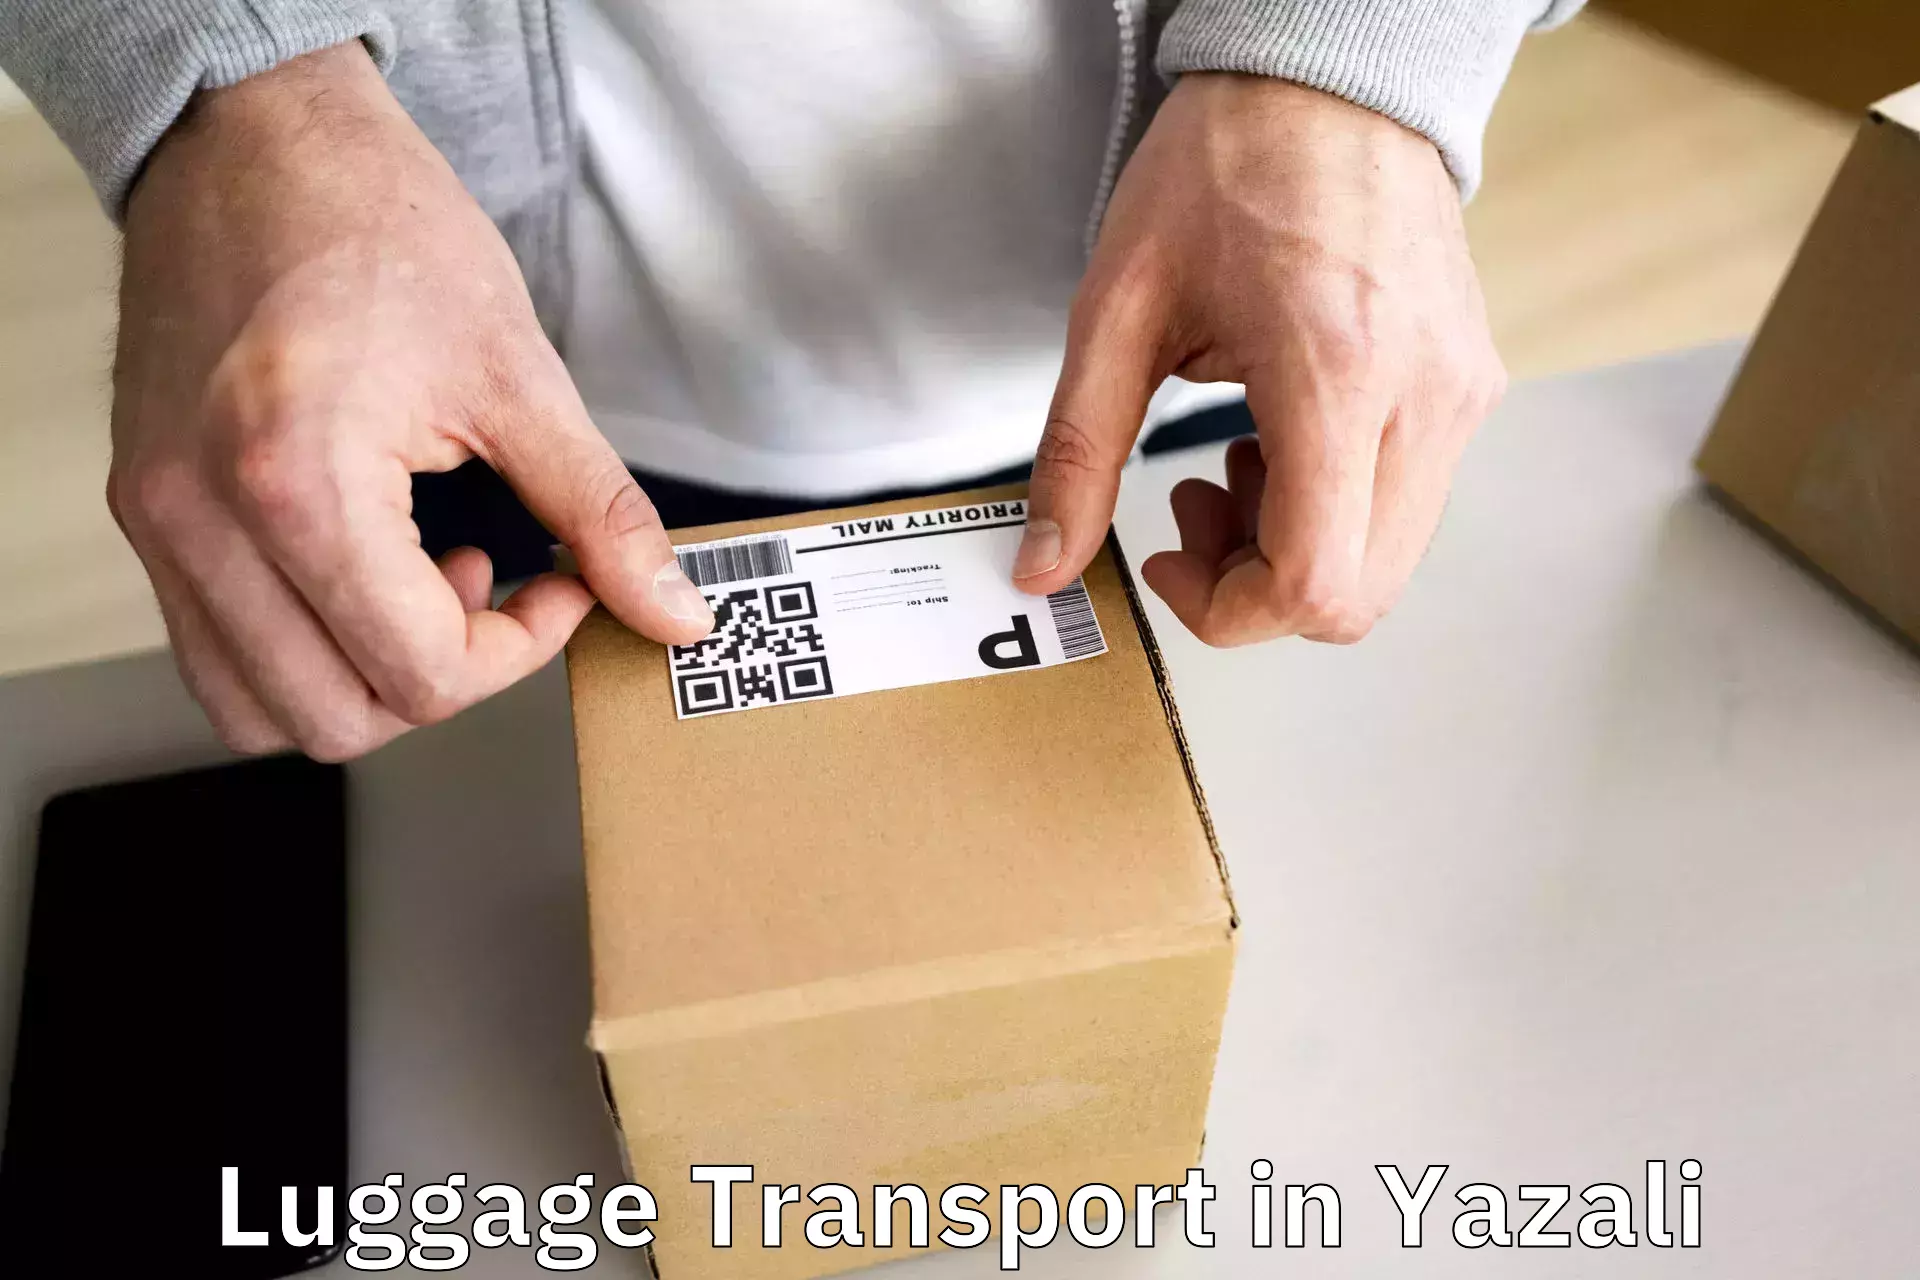 Luggage shipment processing in Yazali